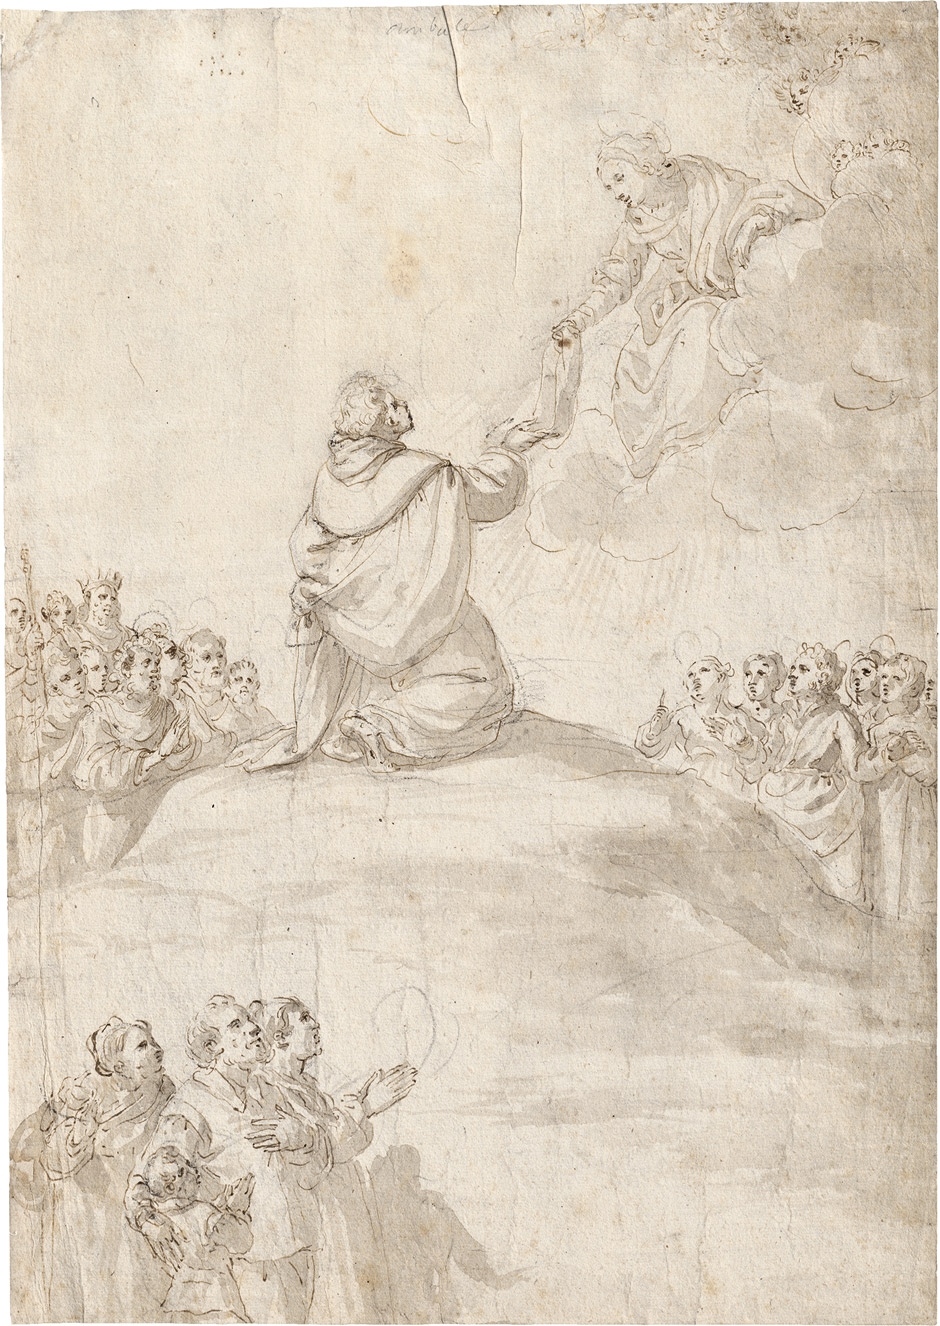 Der hl. Thomas empfängt den Gürtel von der Jungfrau Maria by Italian School, 17th Century